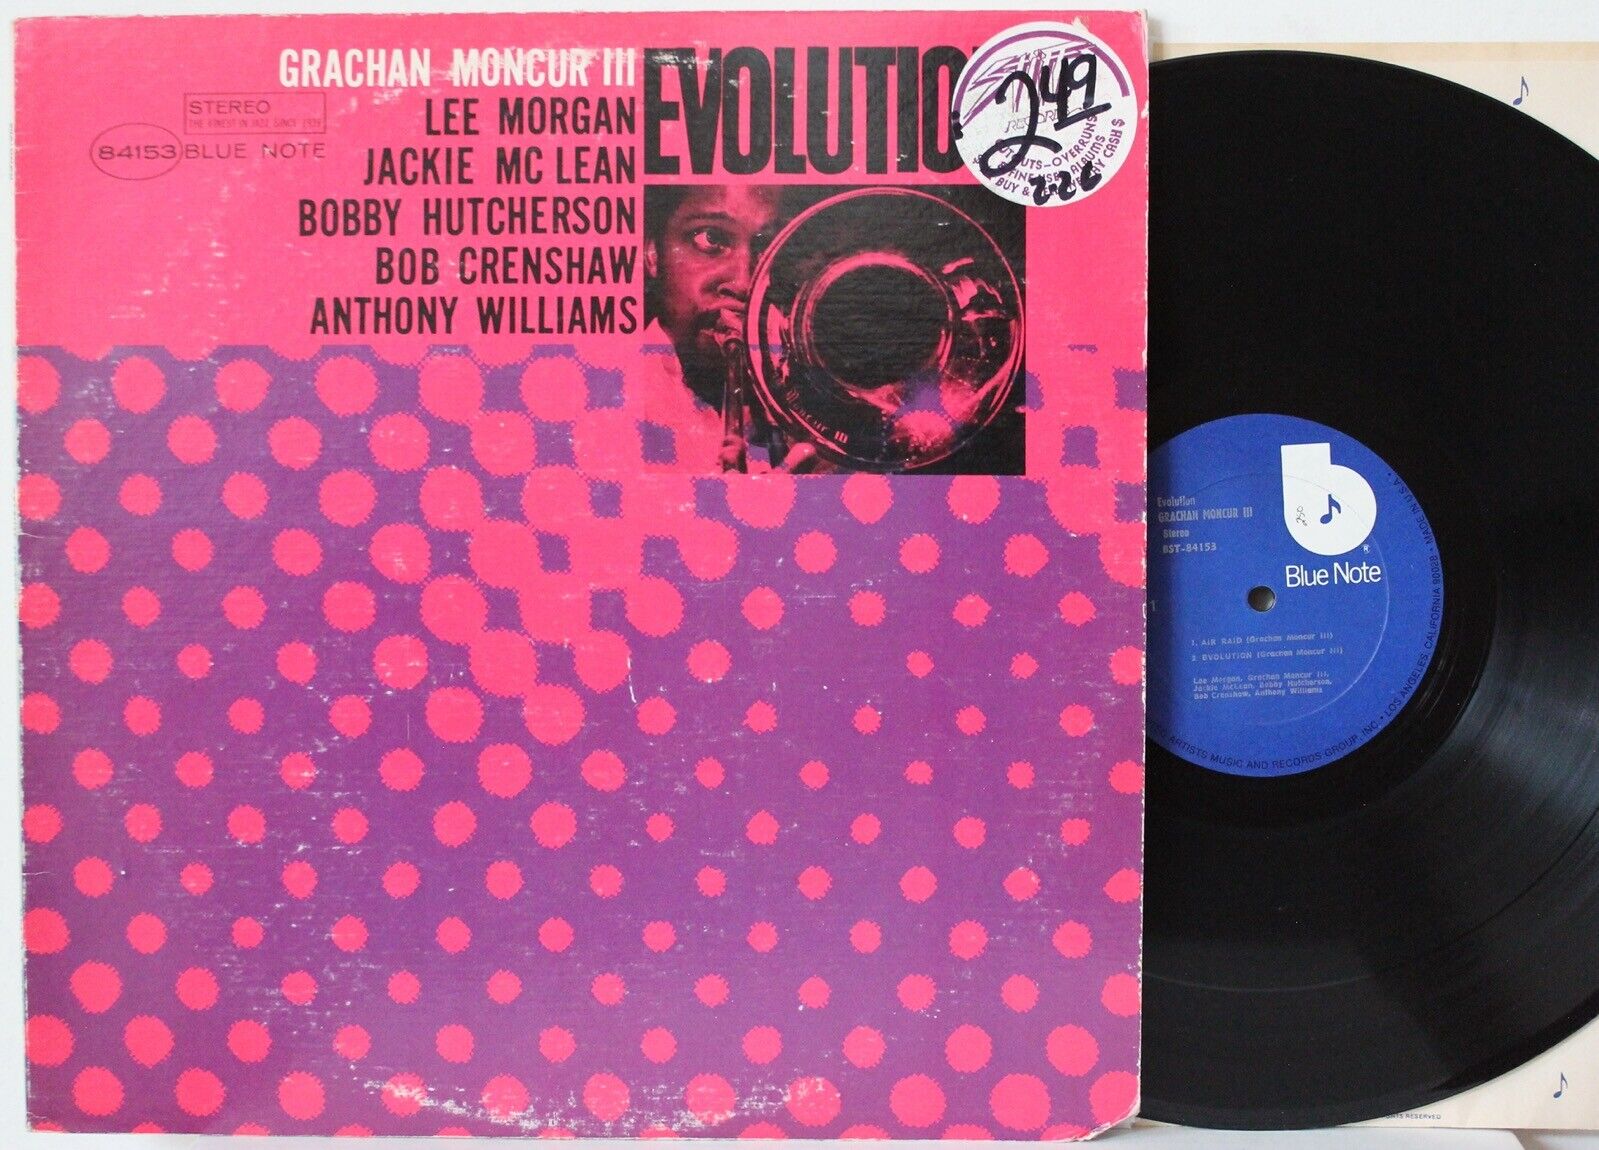 GRACHAN MONCUR III “Evolution” LP (Blue Note 84153, Van Gelder) VG++ Lee  Morgan